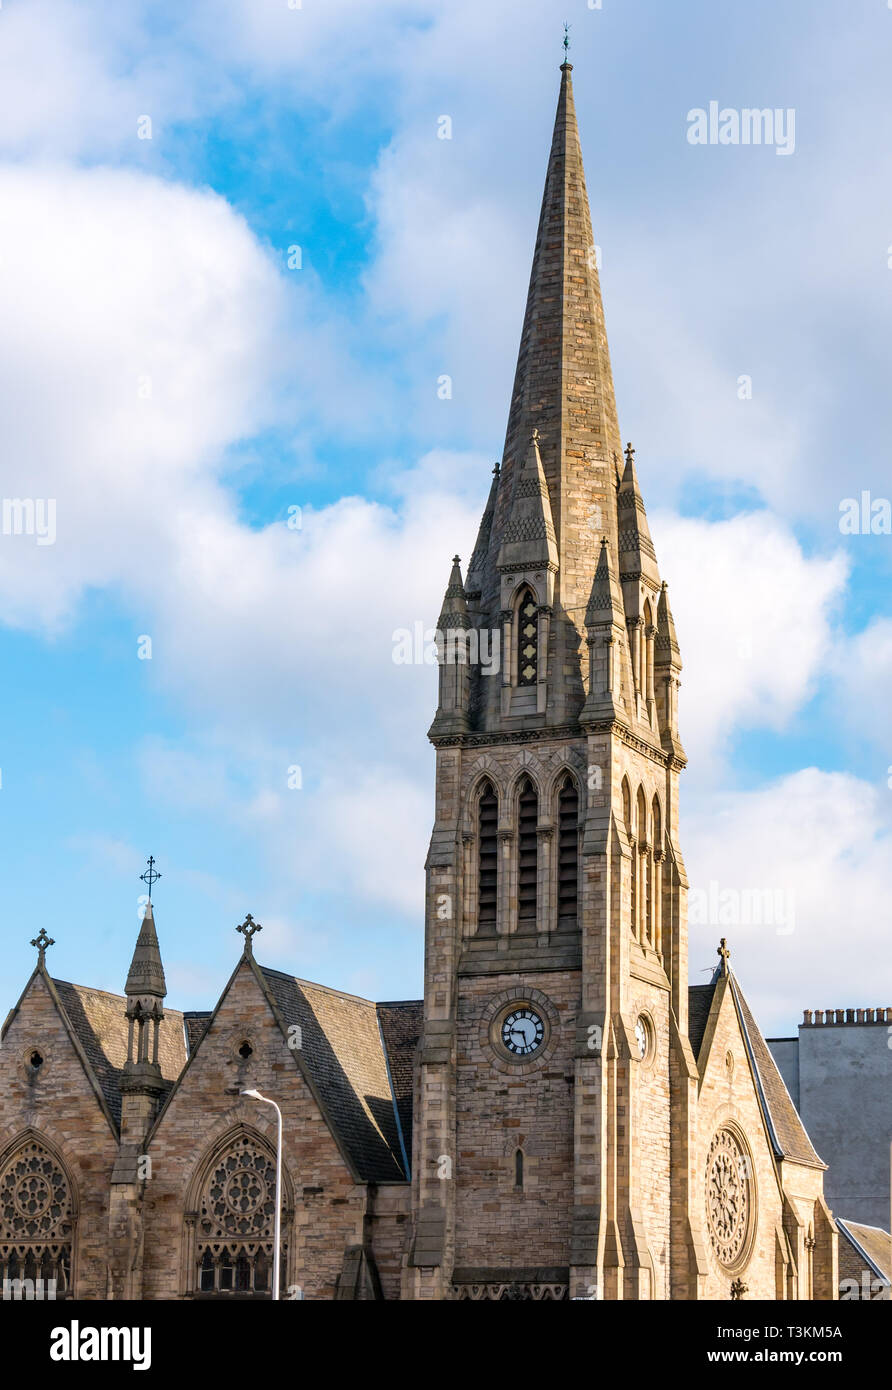 Flèche de Victorian Pilrig St Paul's Church of Scotland, style gothique français par Peddie & Kinnear, Leith Walk, Édimbourg, Écosse, Royaume-Uni Banque D'Images